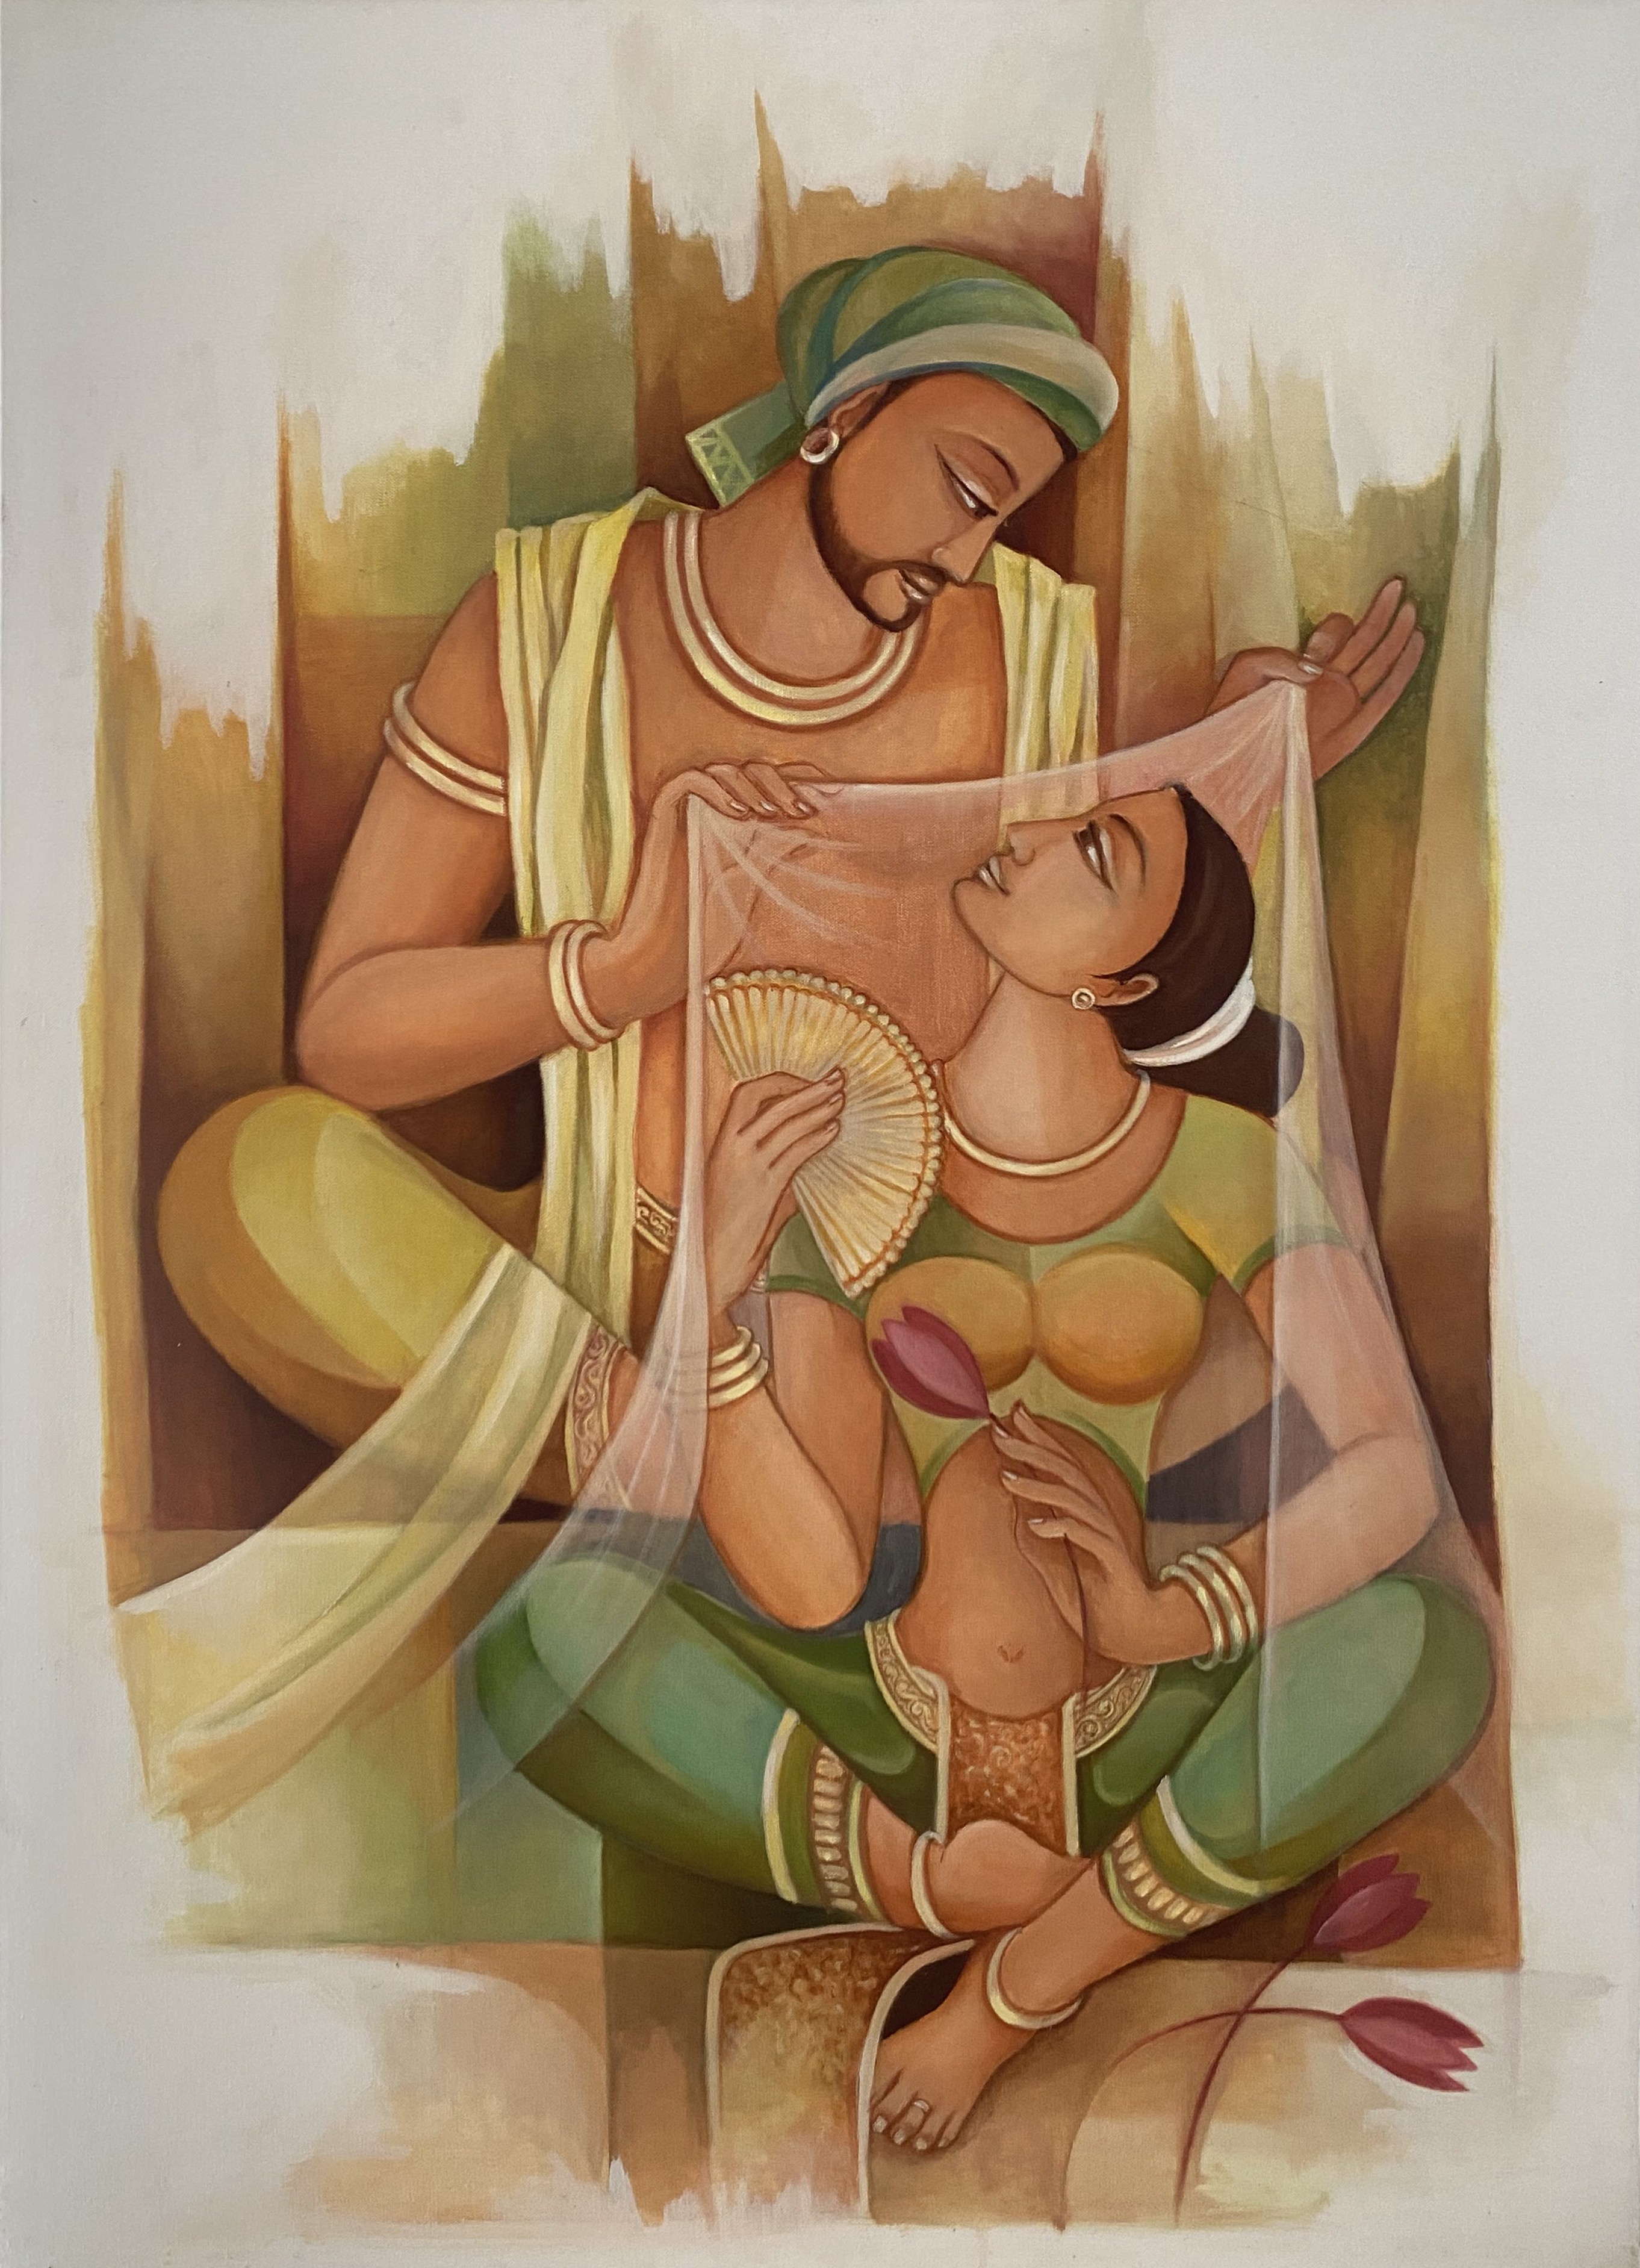 Sangawana Rusiru II by Upul Jayashantha